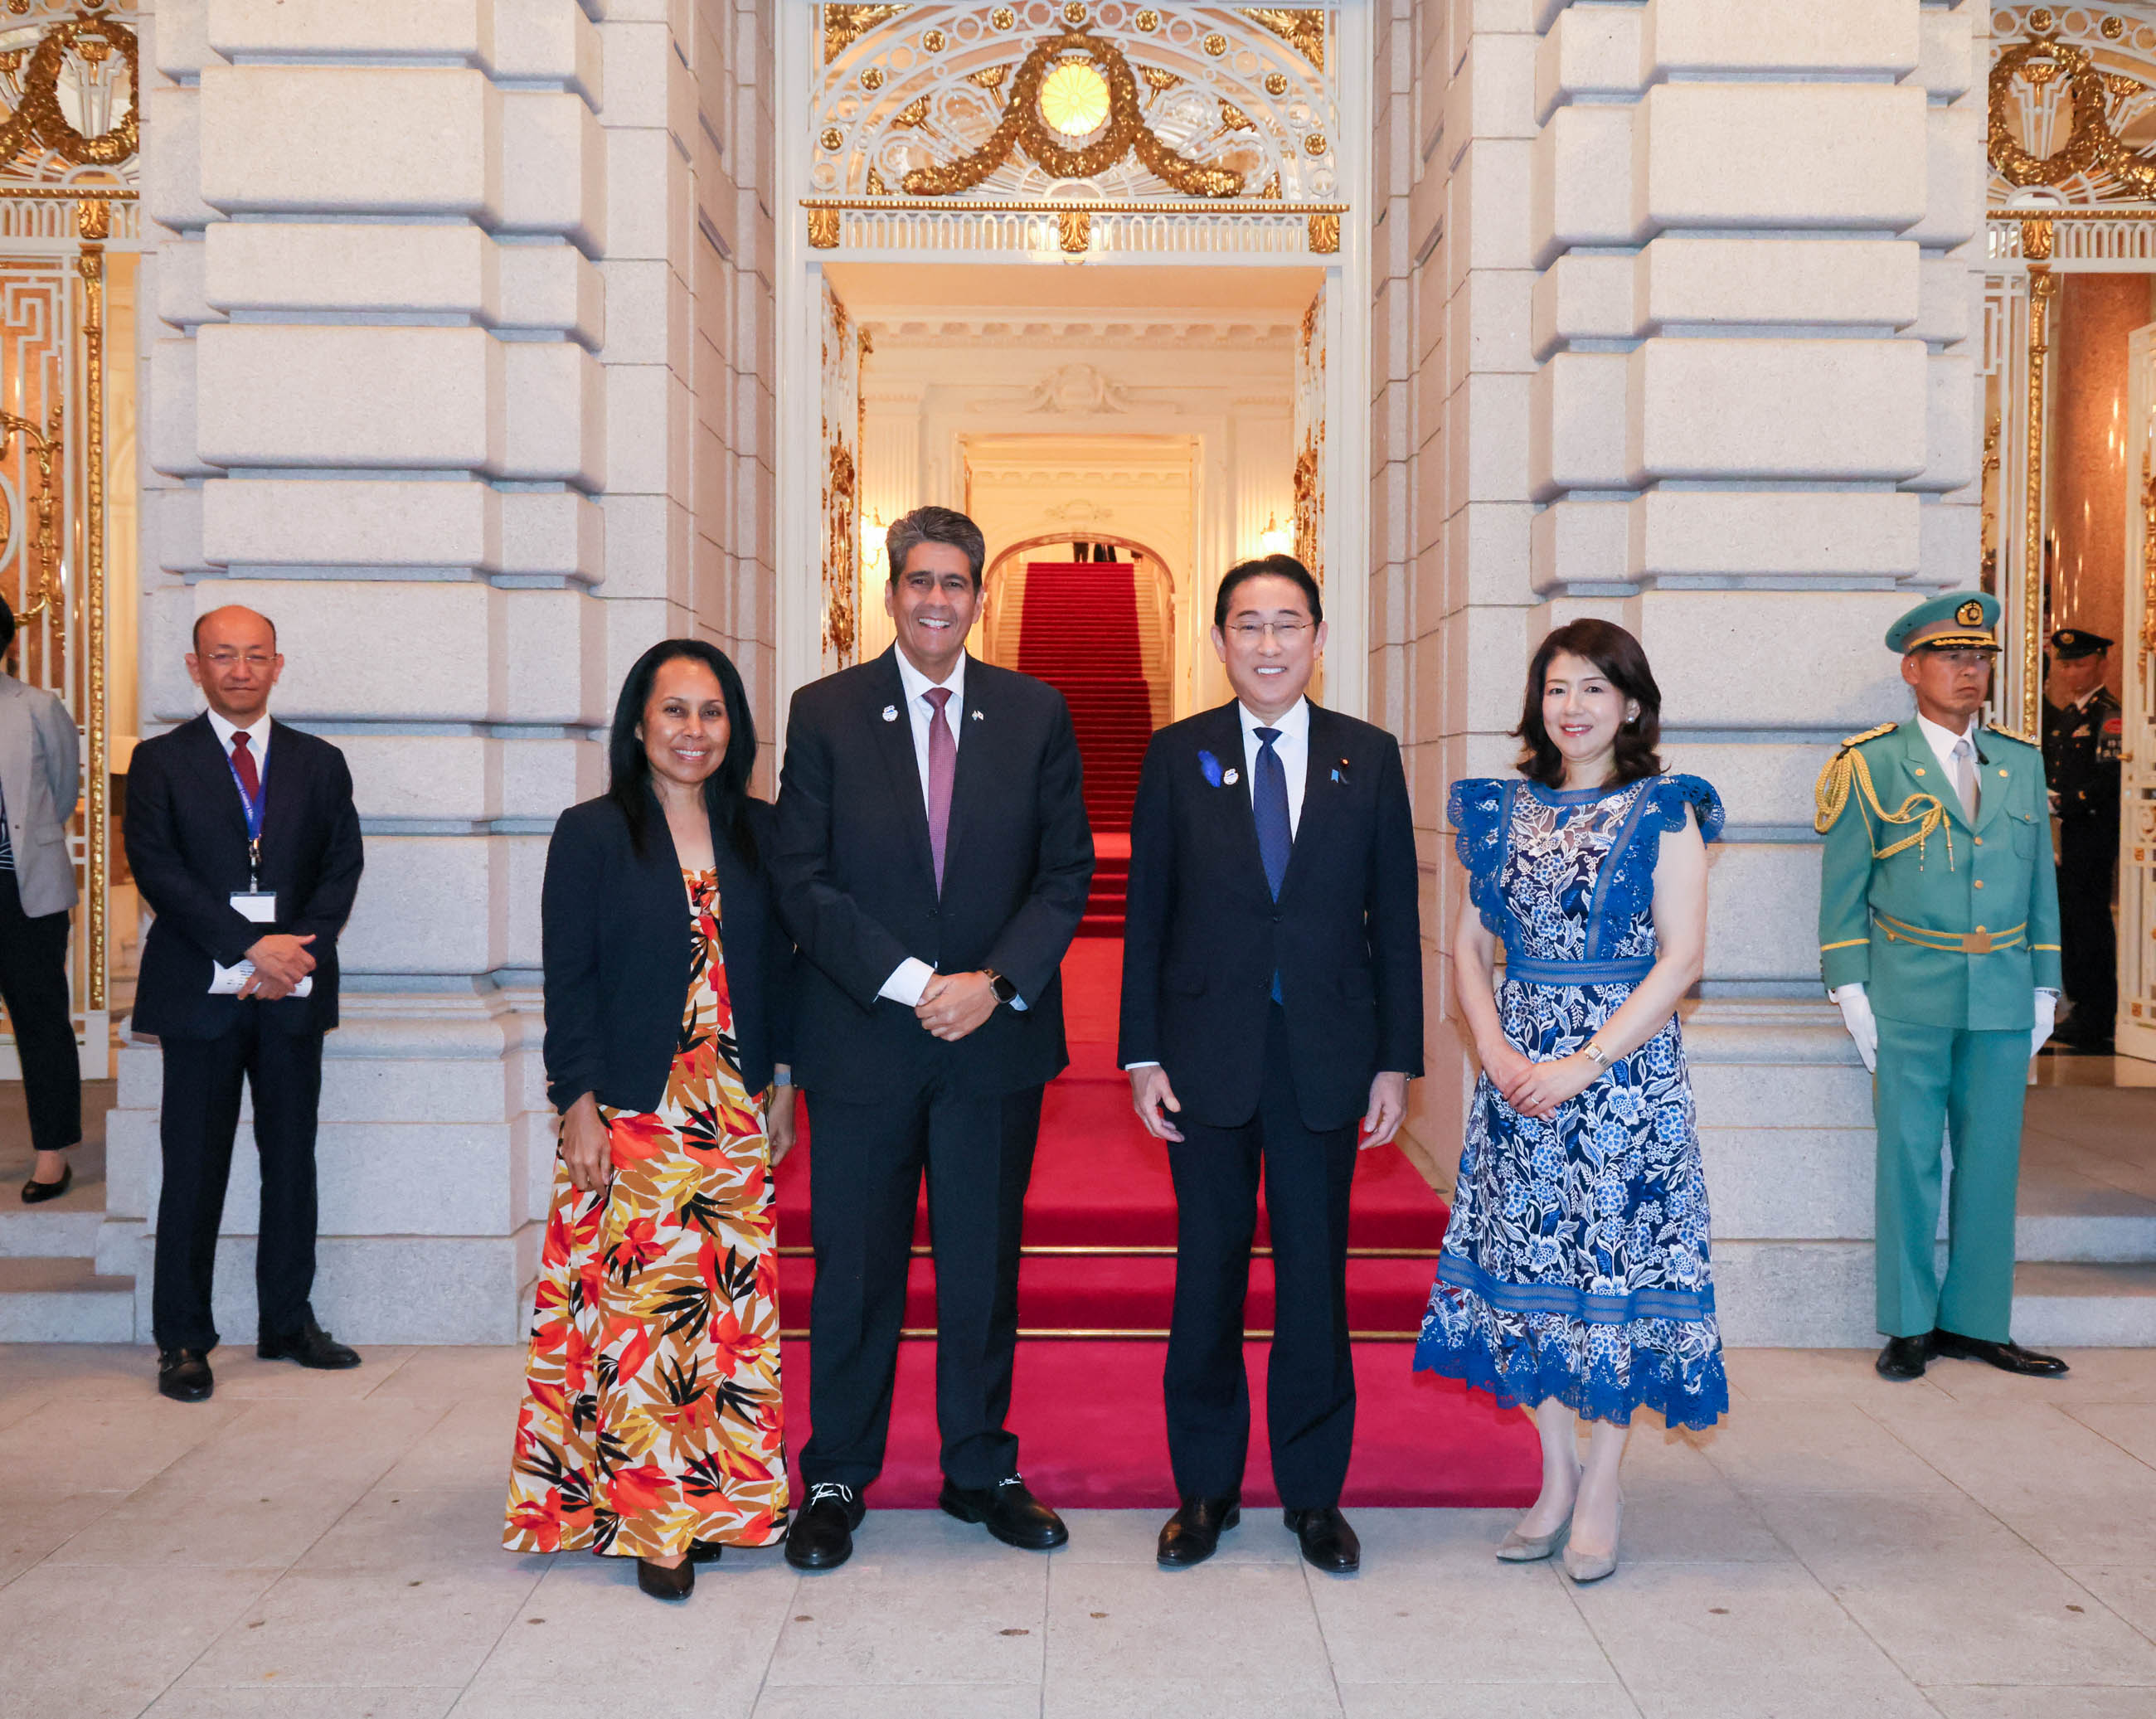 Prime Minister Kishida welcoming H.E. Mr. Surangel S. WHIPPS, Jr., President of the Republic of Palau and Mrs. WHIPPS 